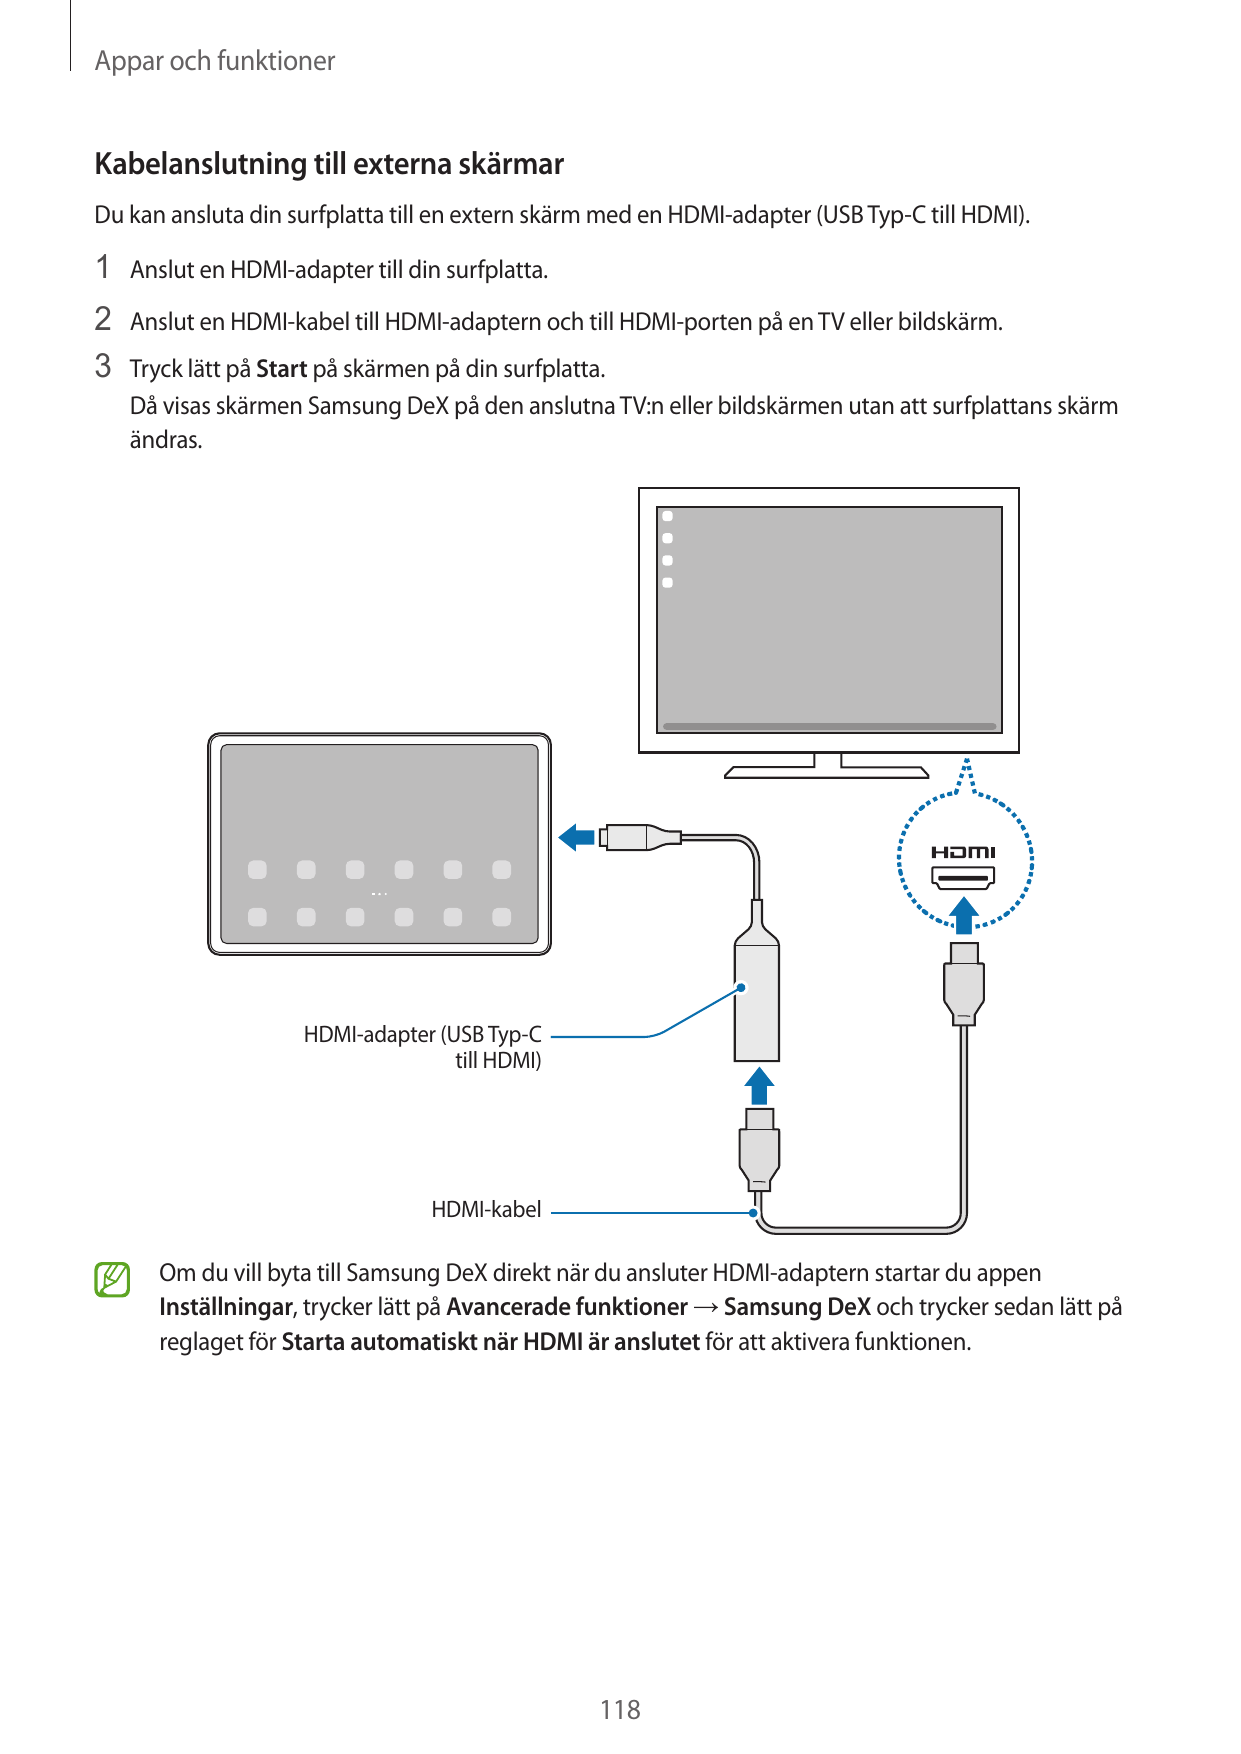 Appar och funktionerKabelanslutning till externa skärmarDu kan ansluta din surfplatta till en extern skärm med en HDMI-adapter (